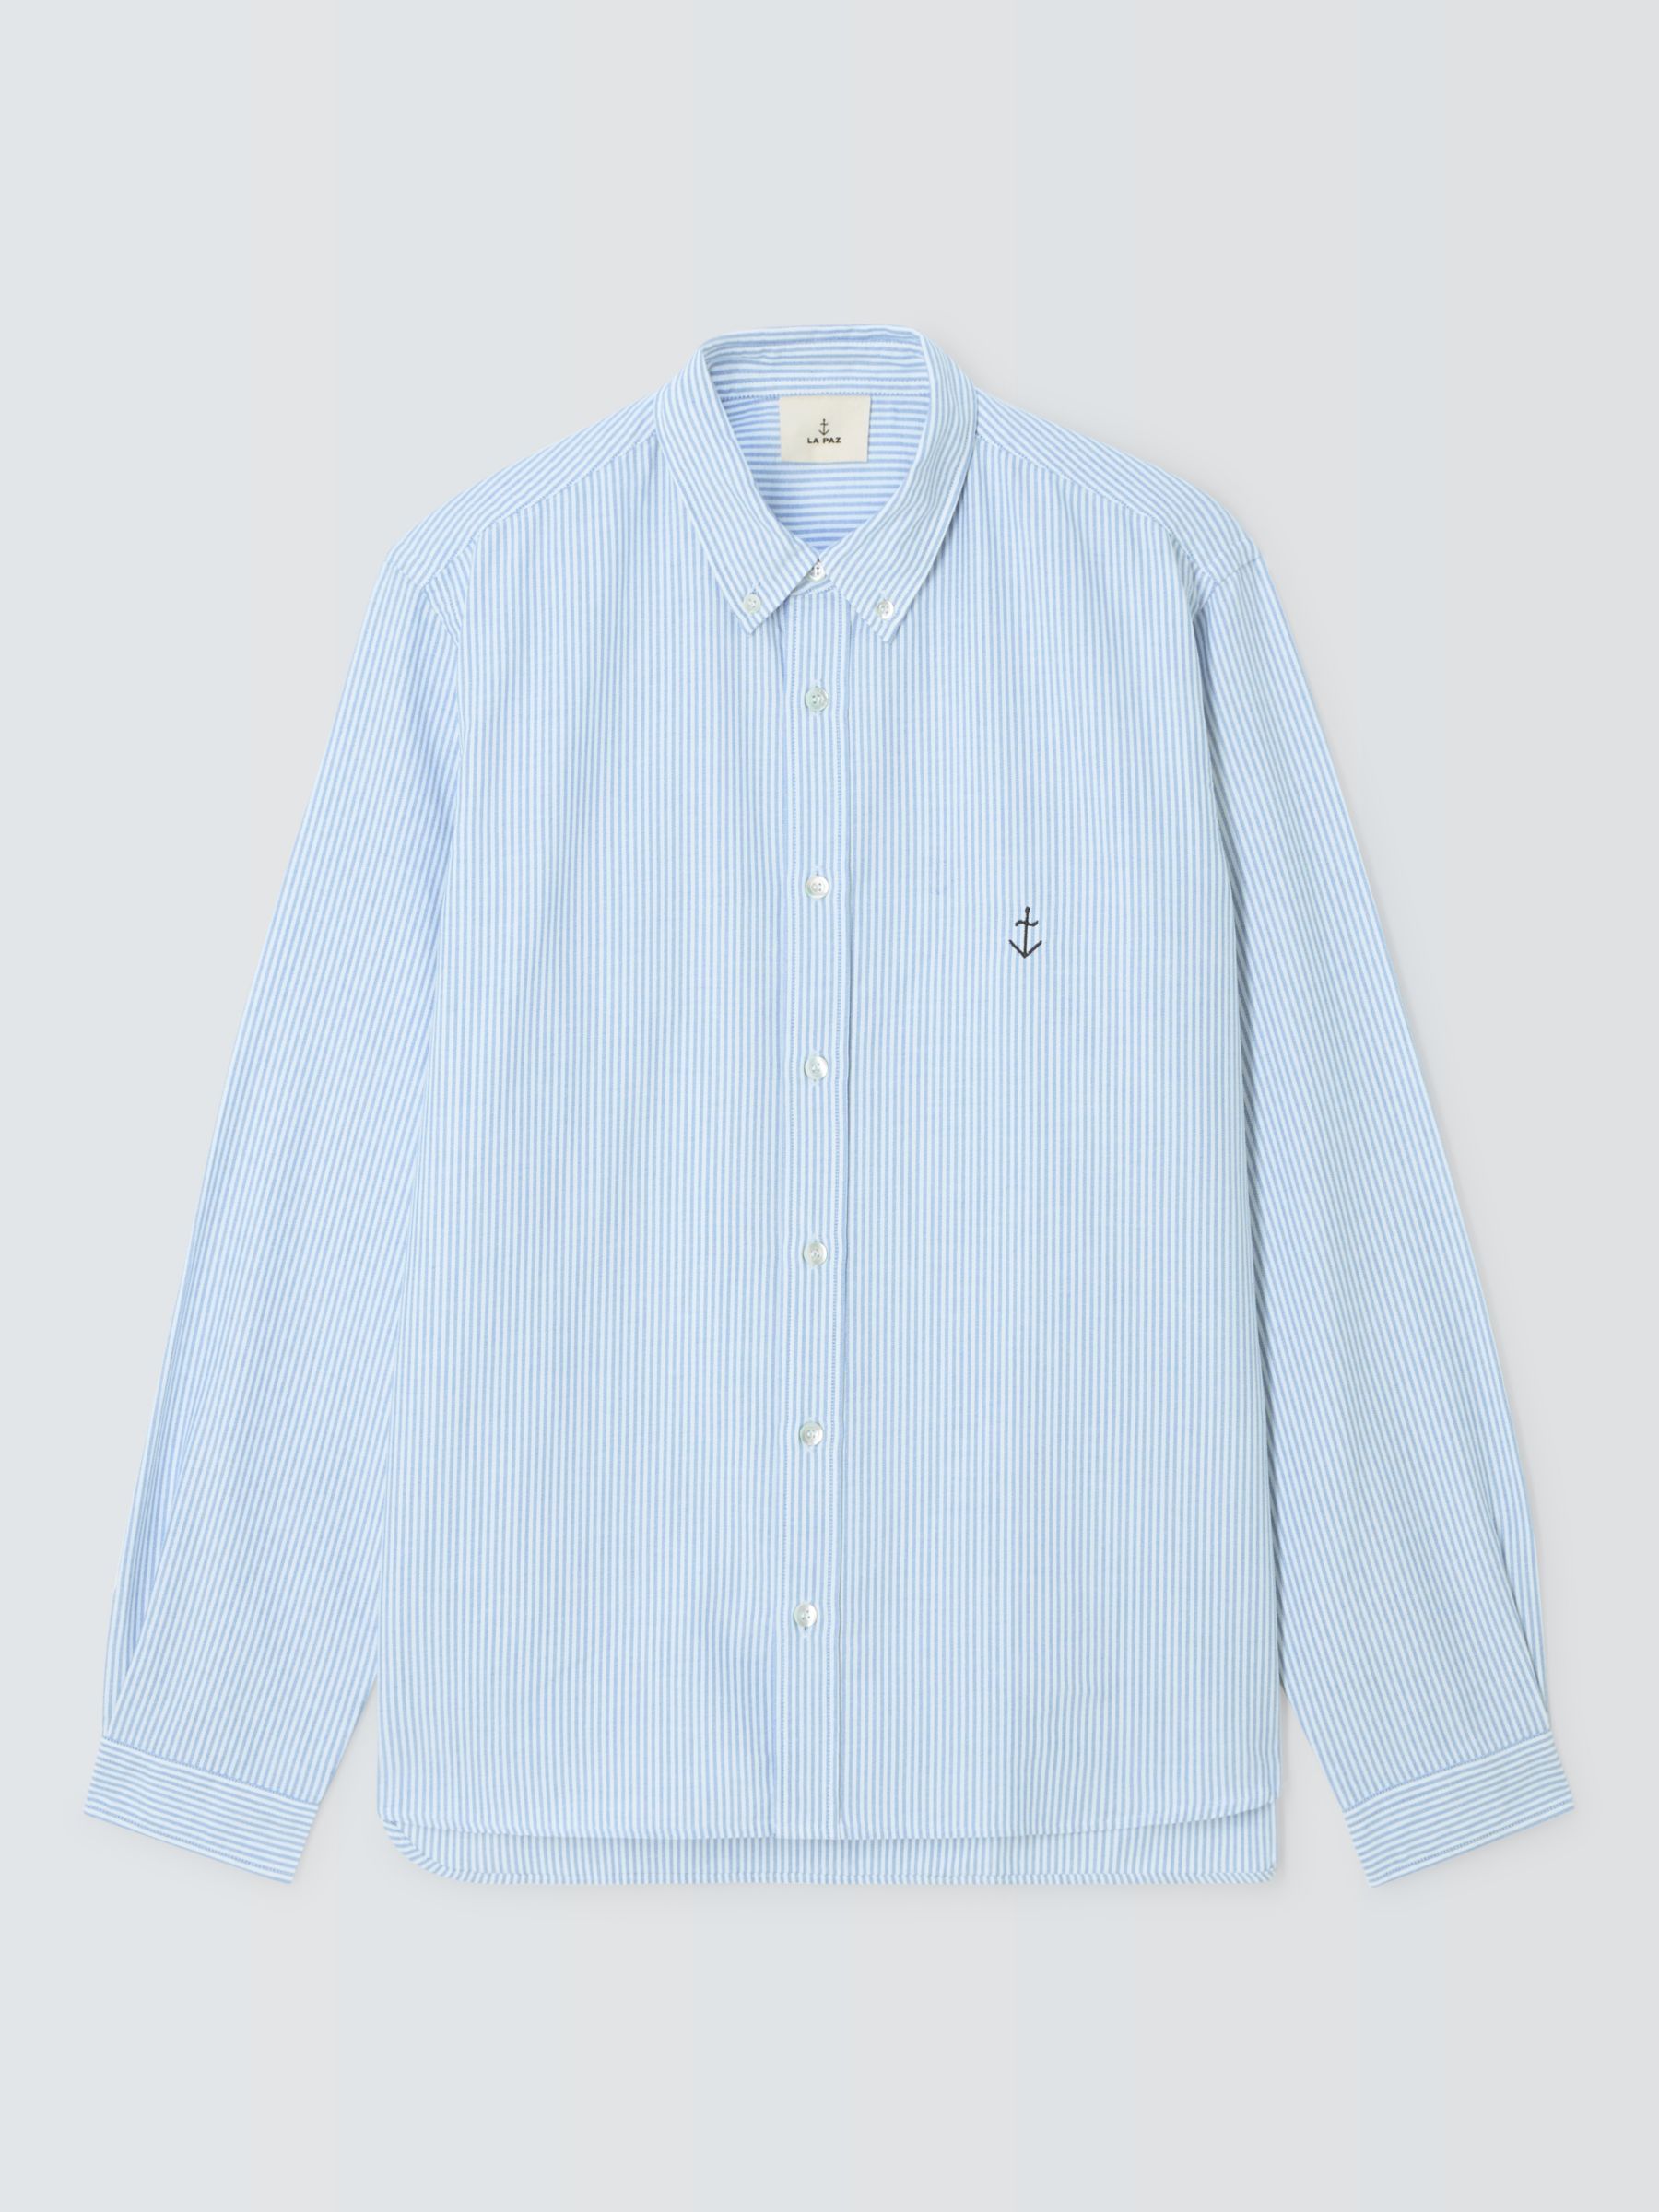 La Paz Button Down Long Sleeve Stripe Shirt, Blue/White, L